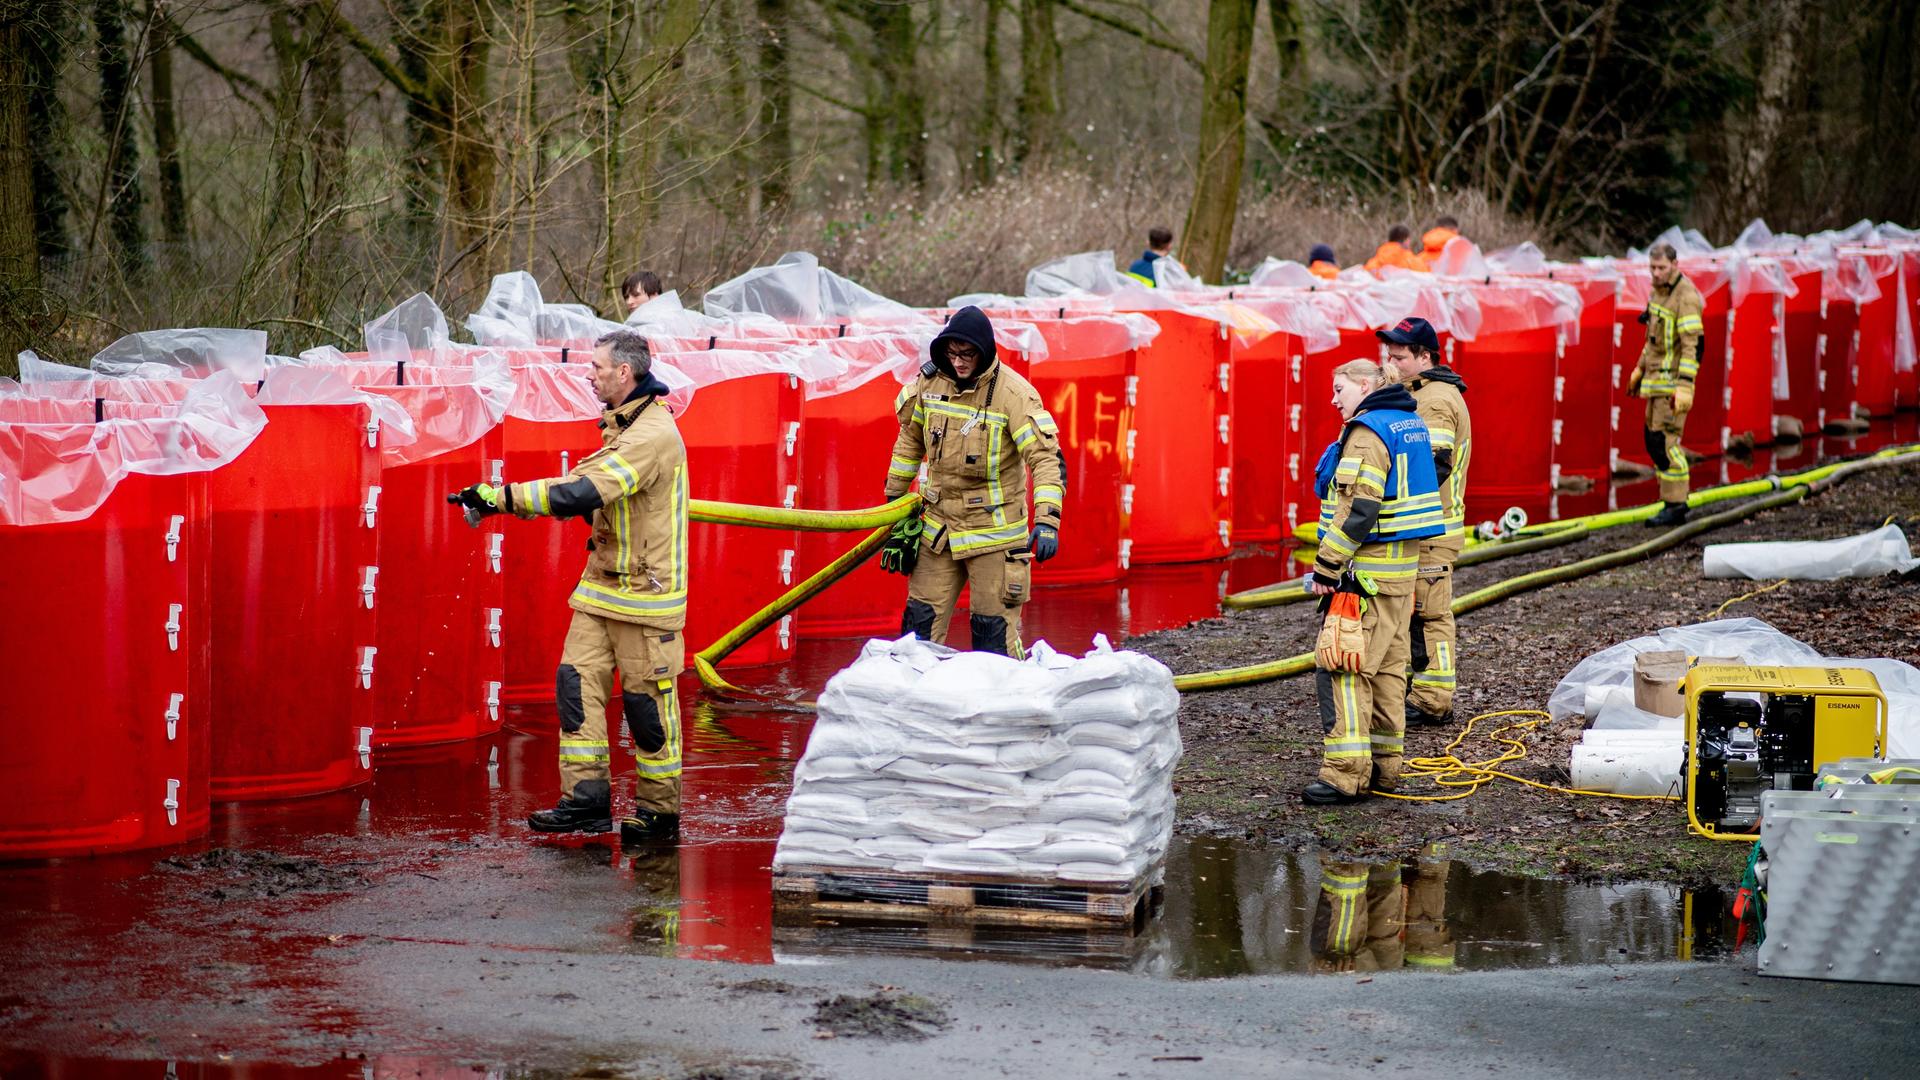 Einsatzkräfte der Feuerwehr befüllen ein mobiles Deichsystem, bestehend aus zahlreichen großen Behältern mit Wasser.